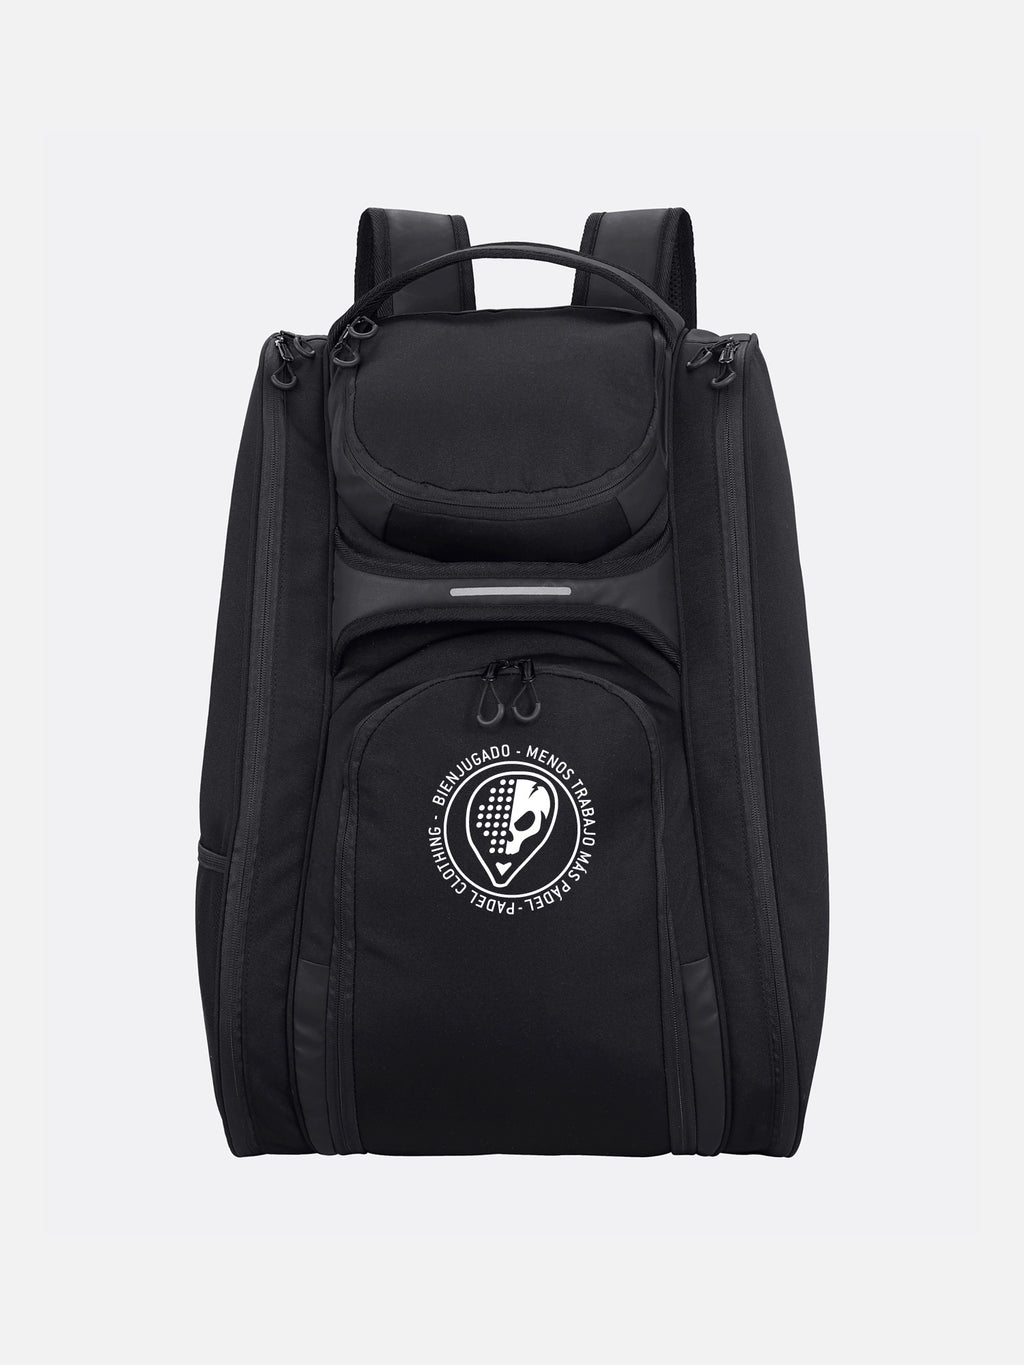 Hook padel Backpack Black